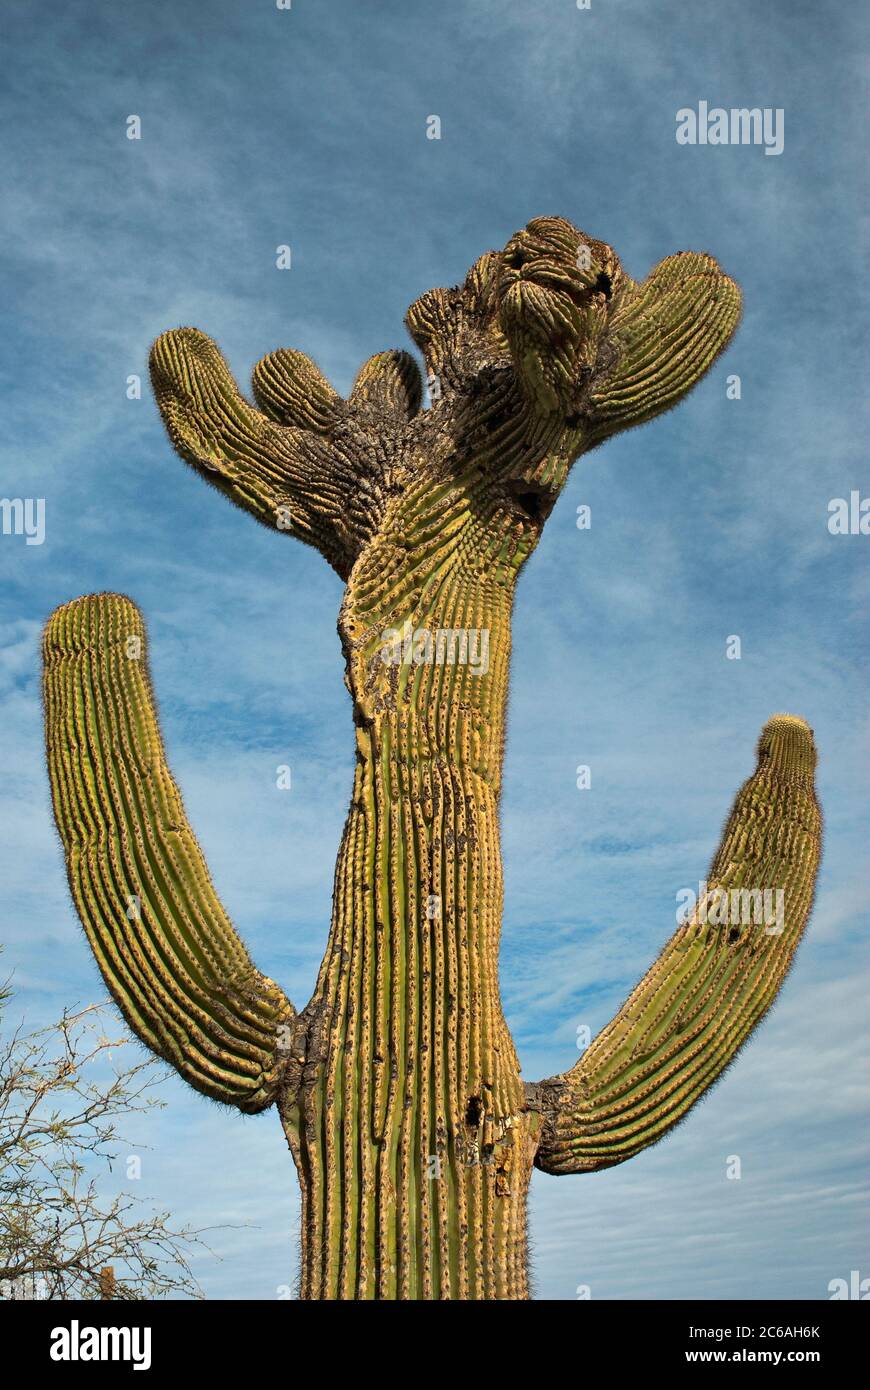 Crested (cristate) saguaro au Centre minier Asarco près de Tucson, Arizona, USA Banque D'Images